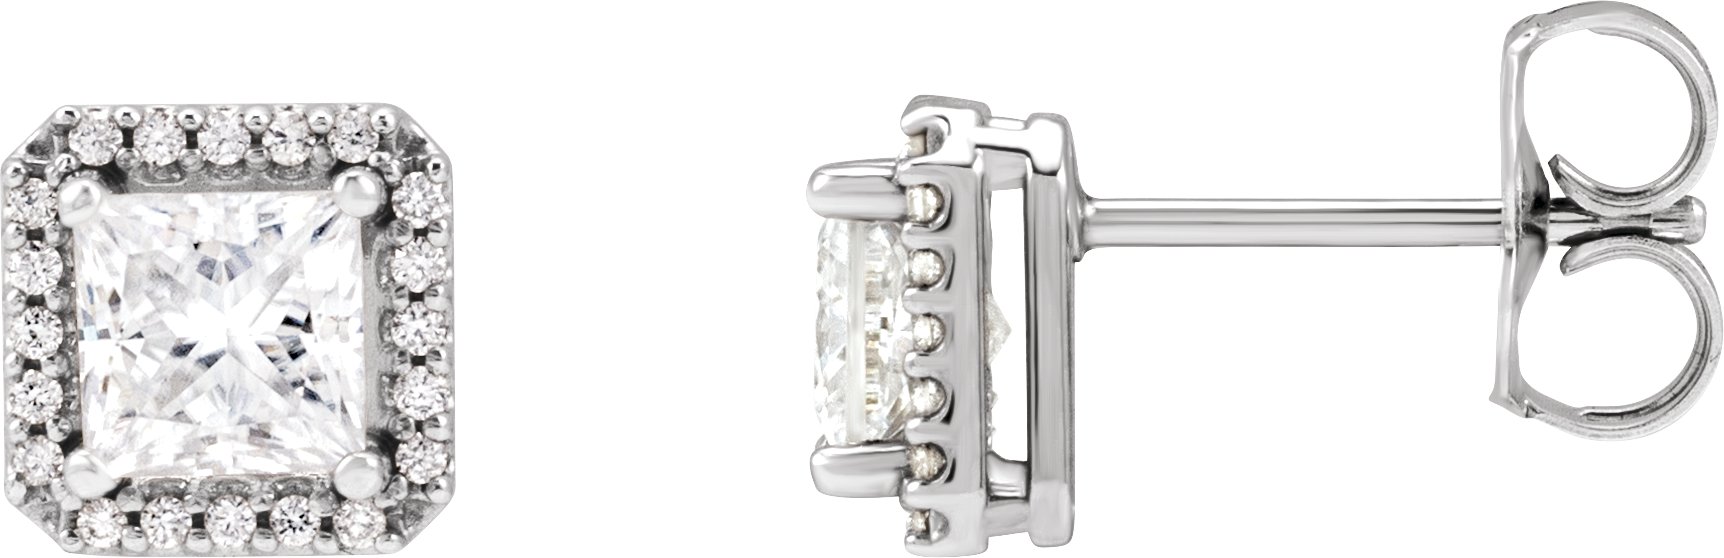 14K White Stuller Lab-Grown Moissanite & .08 CTW Natural Diamond Halo-Style Earrings